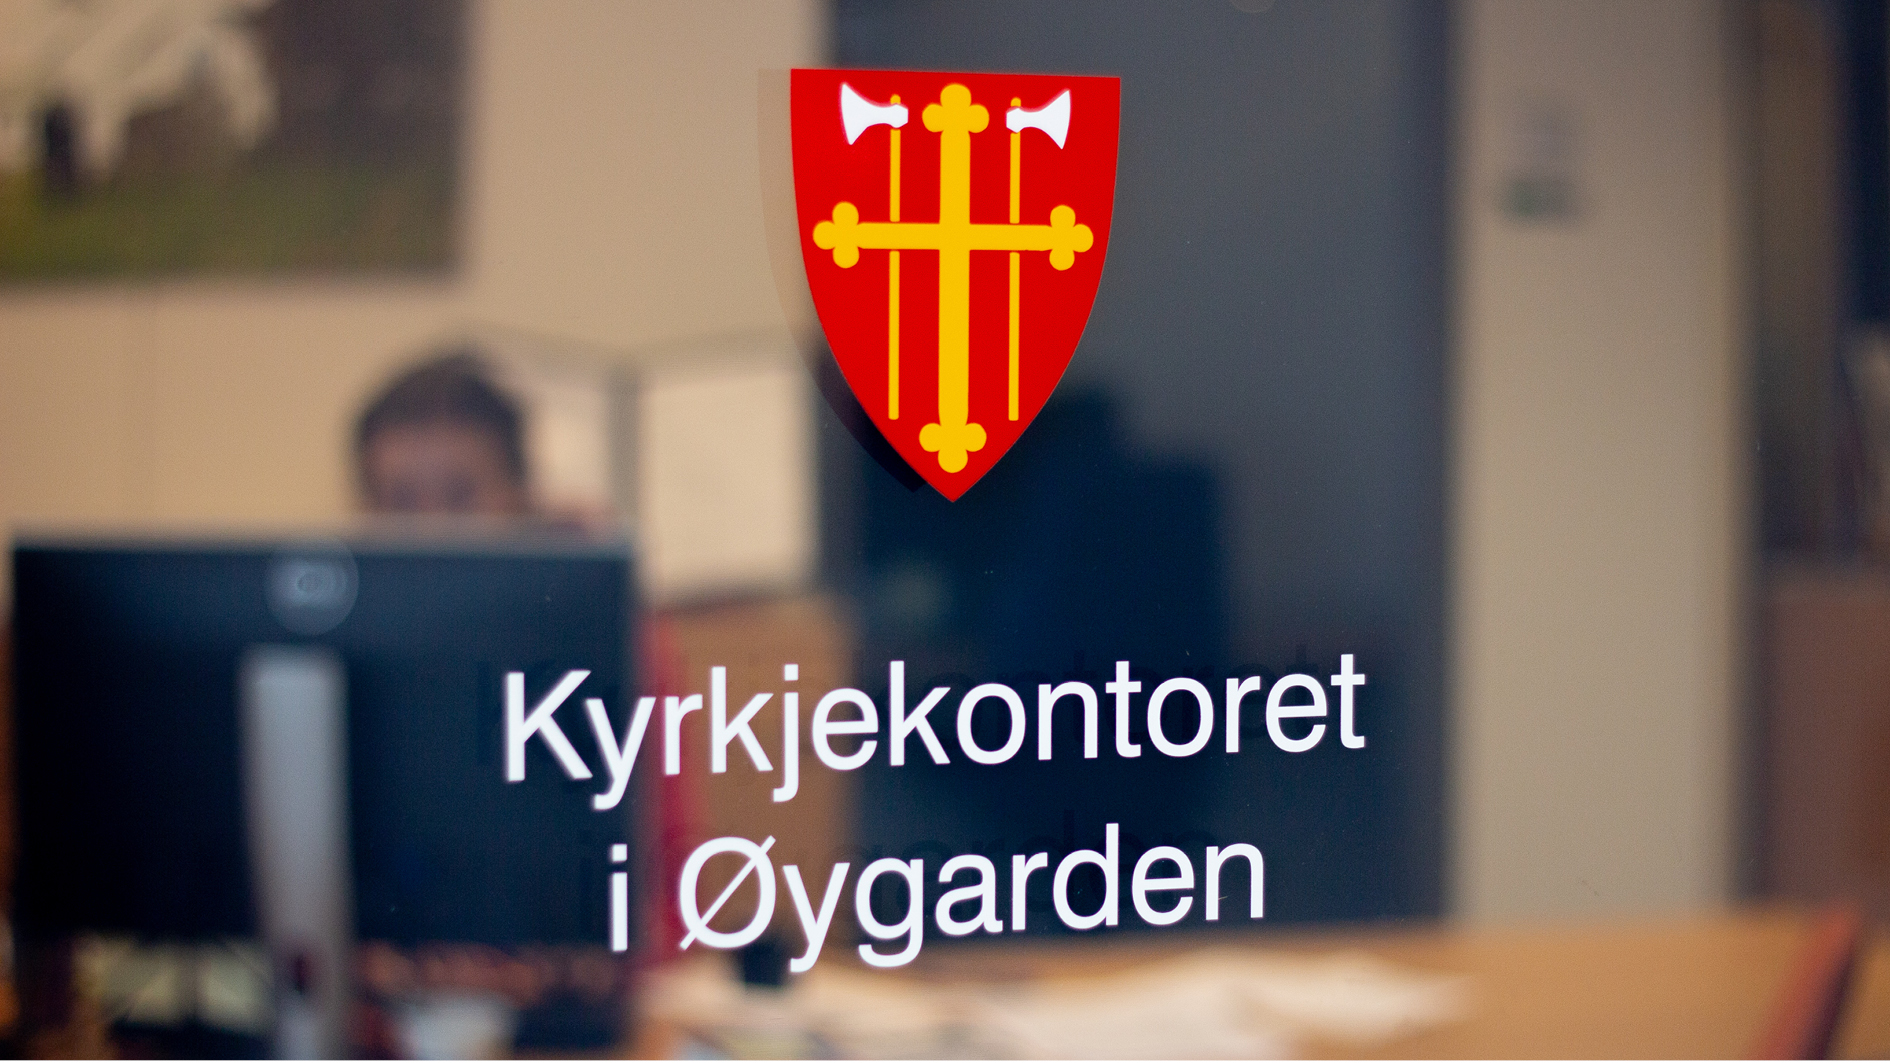 Logoen til Den norske kyrkja, rødt våpenskjold med gult kors og økser, på døren inn til kyrkjekontoret. Man kan skimte at det sitter noen i resepsjonen i bakggrunnen. 